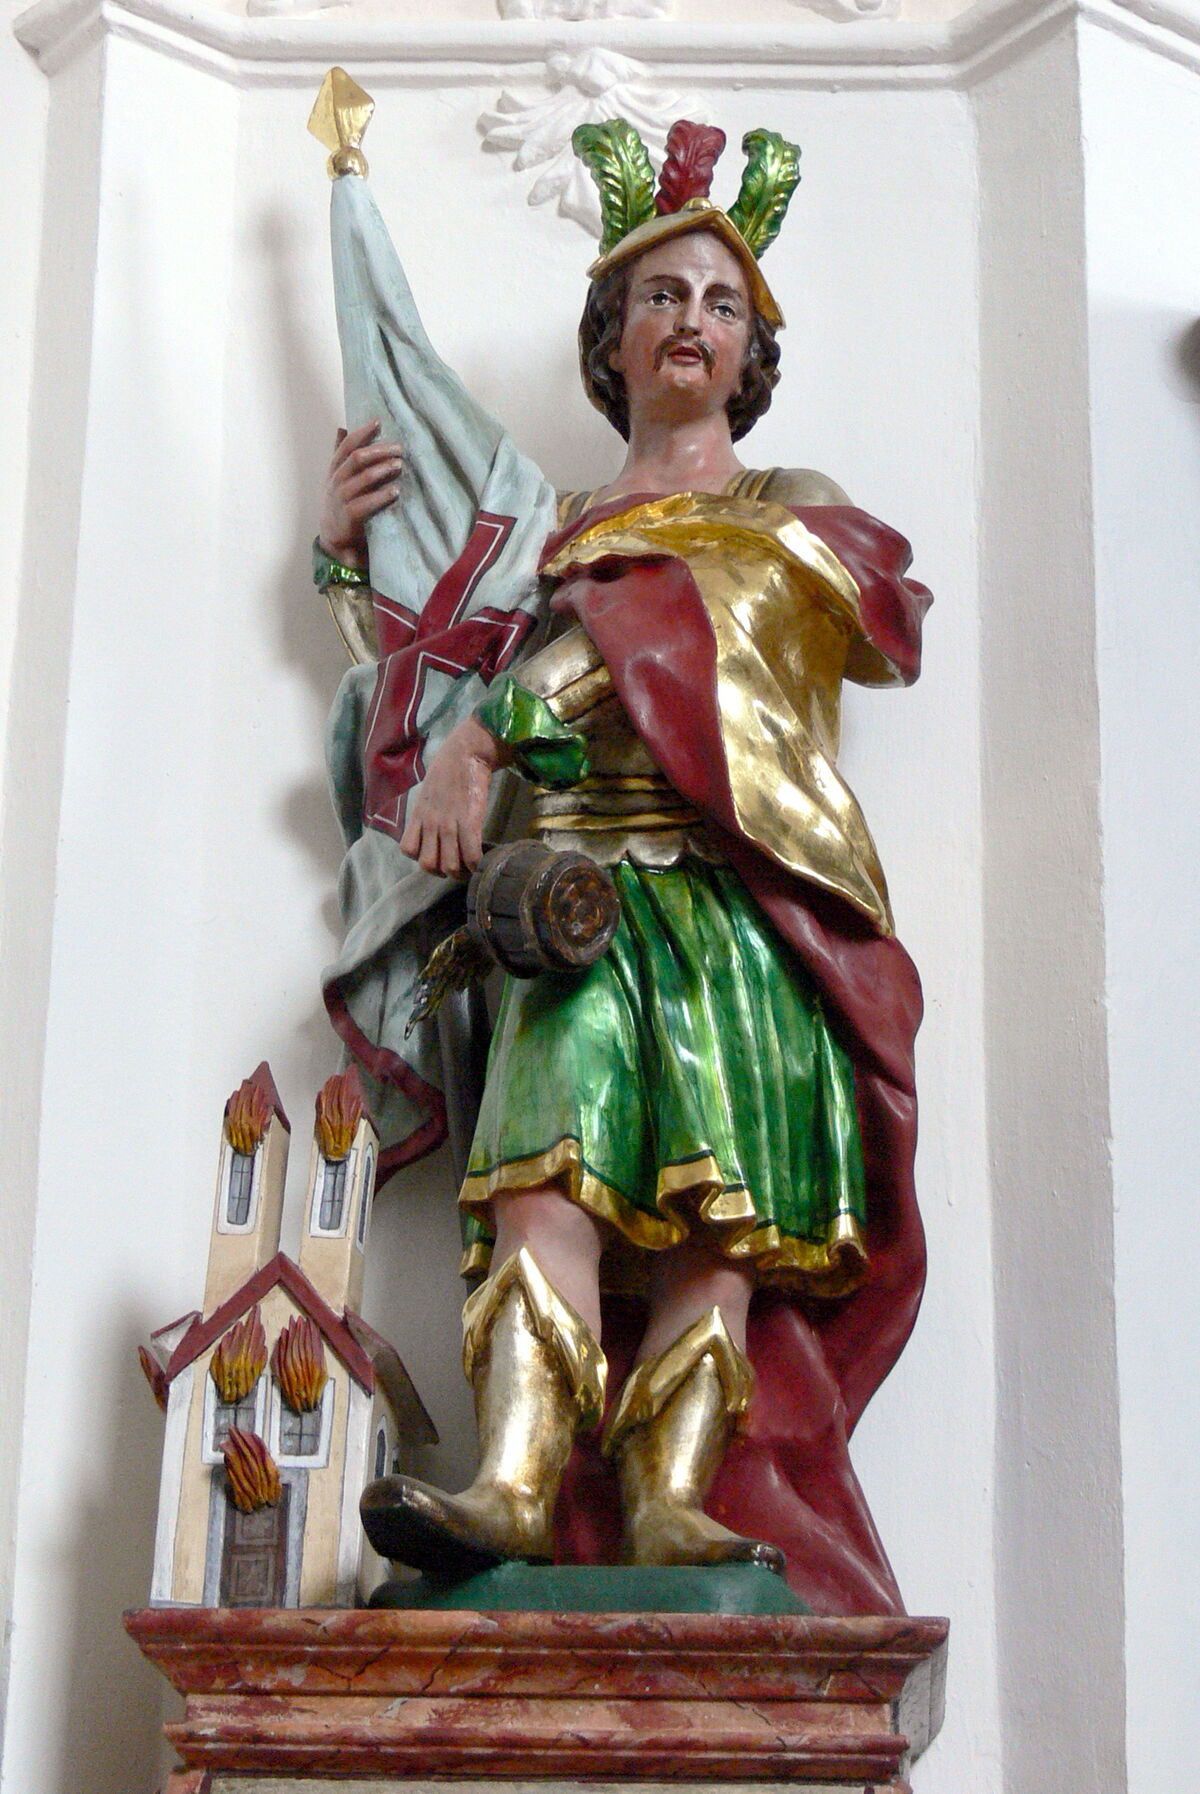 GFD 1/46: Statue des Heiligen Florian in der Pfarrkirche St. Joseph in Waxenberg, Österreich (Künstler unbekannt, 18. Jh.)